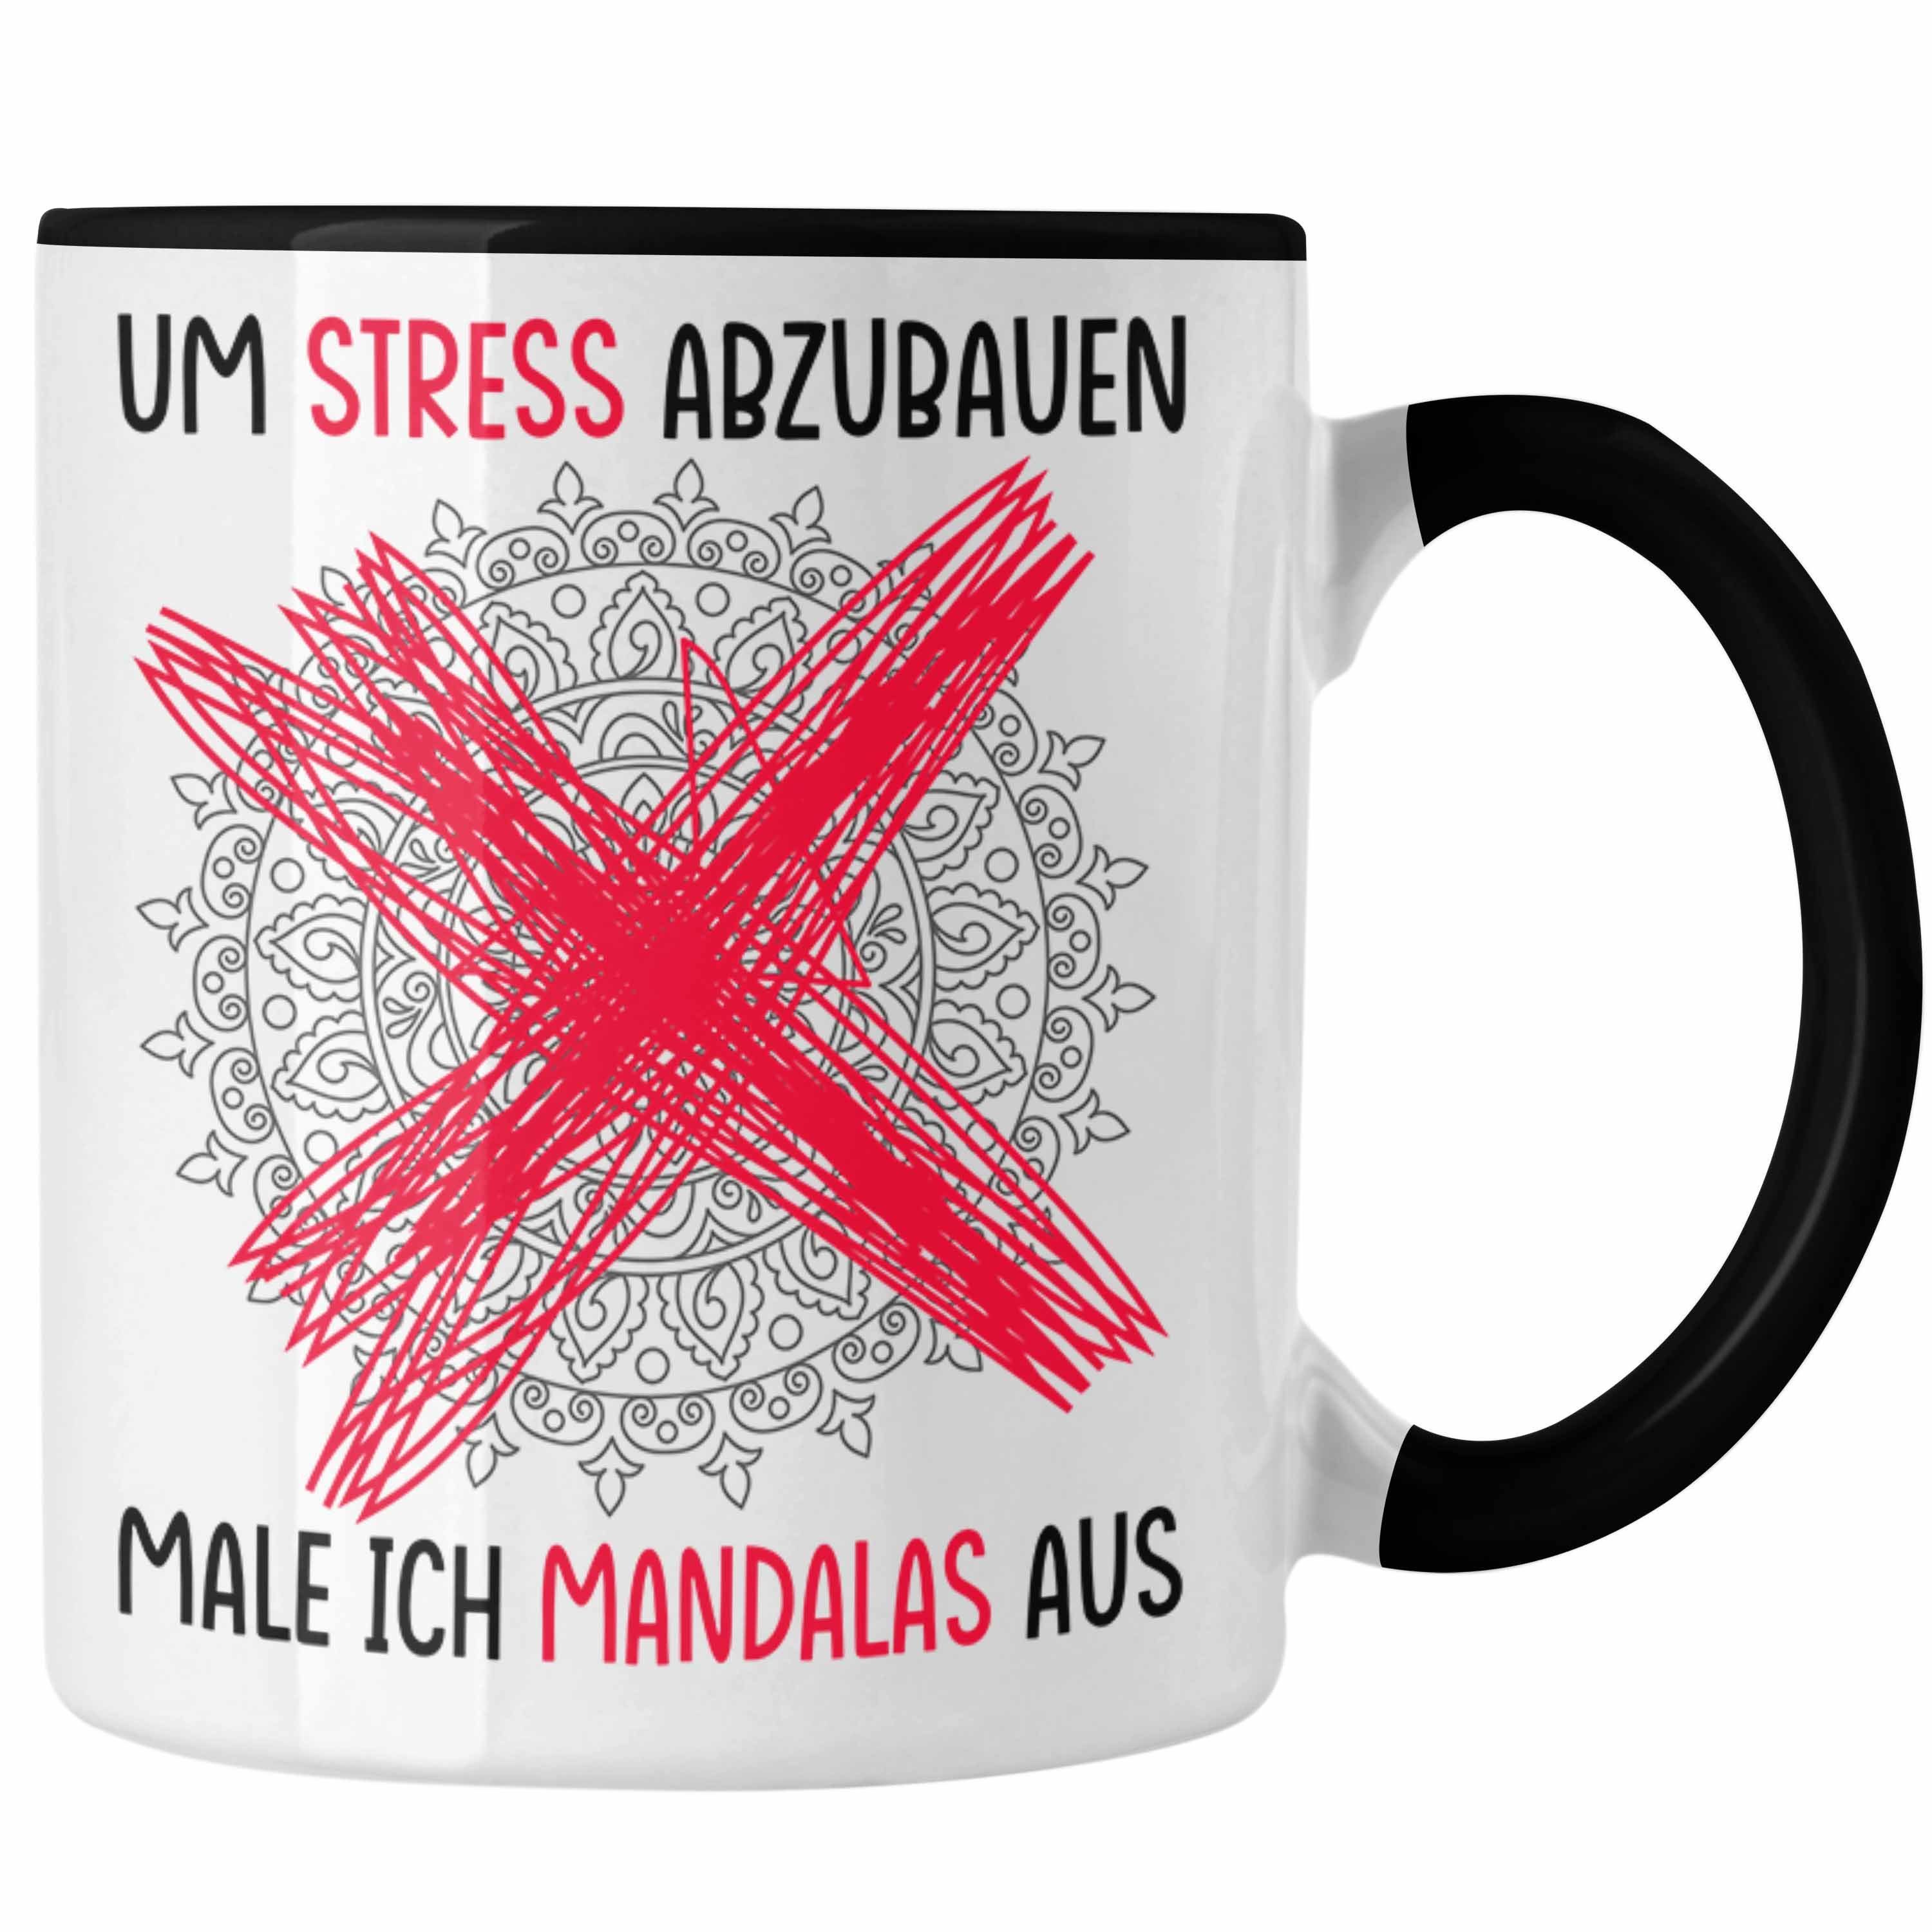 Trendation Tasse Lustige Tasse Geschenk Spruch Um Stress Abzubauen Male Ich Mandalas Au Schwarz